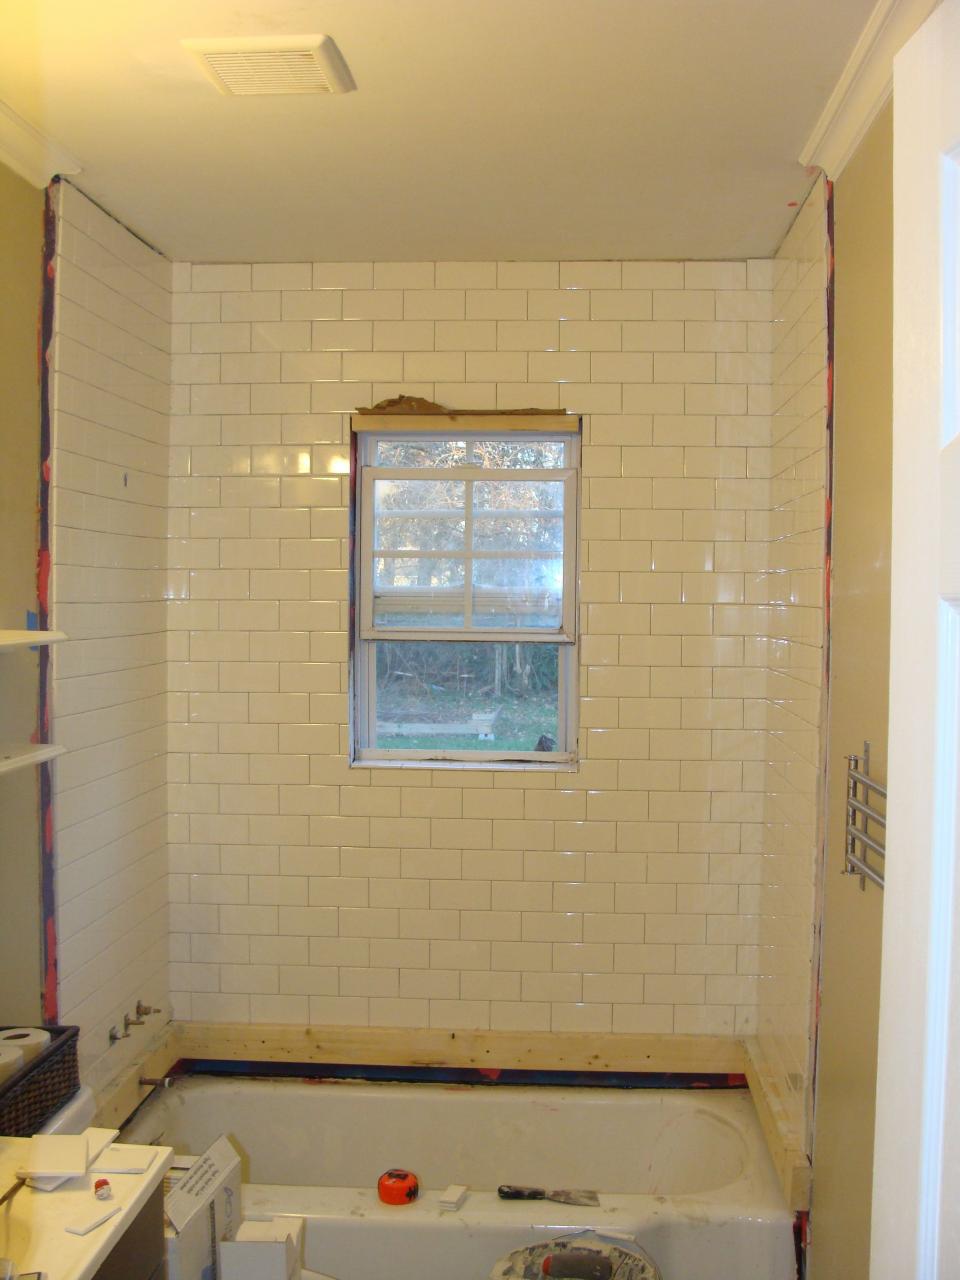 Bathroom Overhaul Chapter 2, Tiling the Shower Tiling a shower